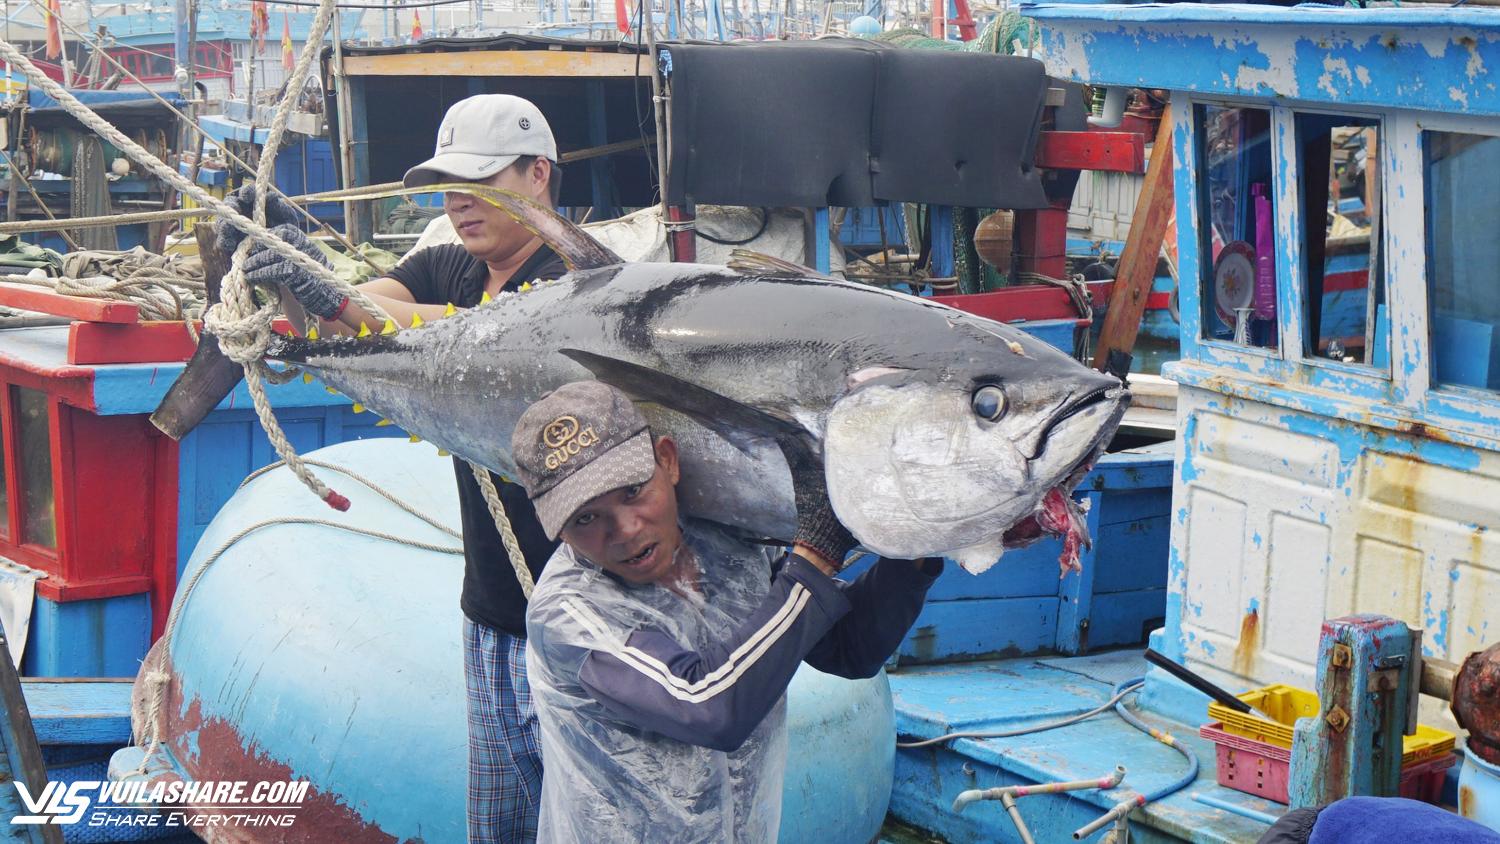 Nhiều đầu bếp nổi tiếng thế giới sẽ trổ tài chế biến cá ngừ đại dương ở Bình Định- Ảnh 2.